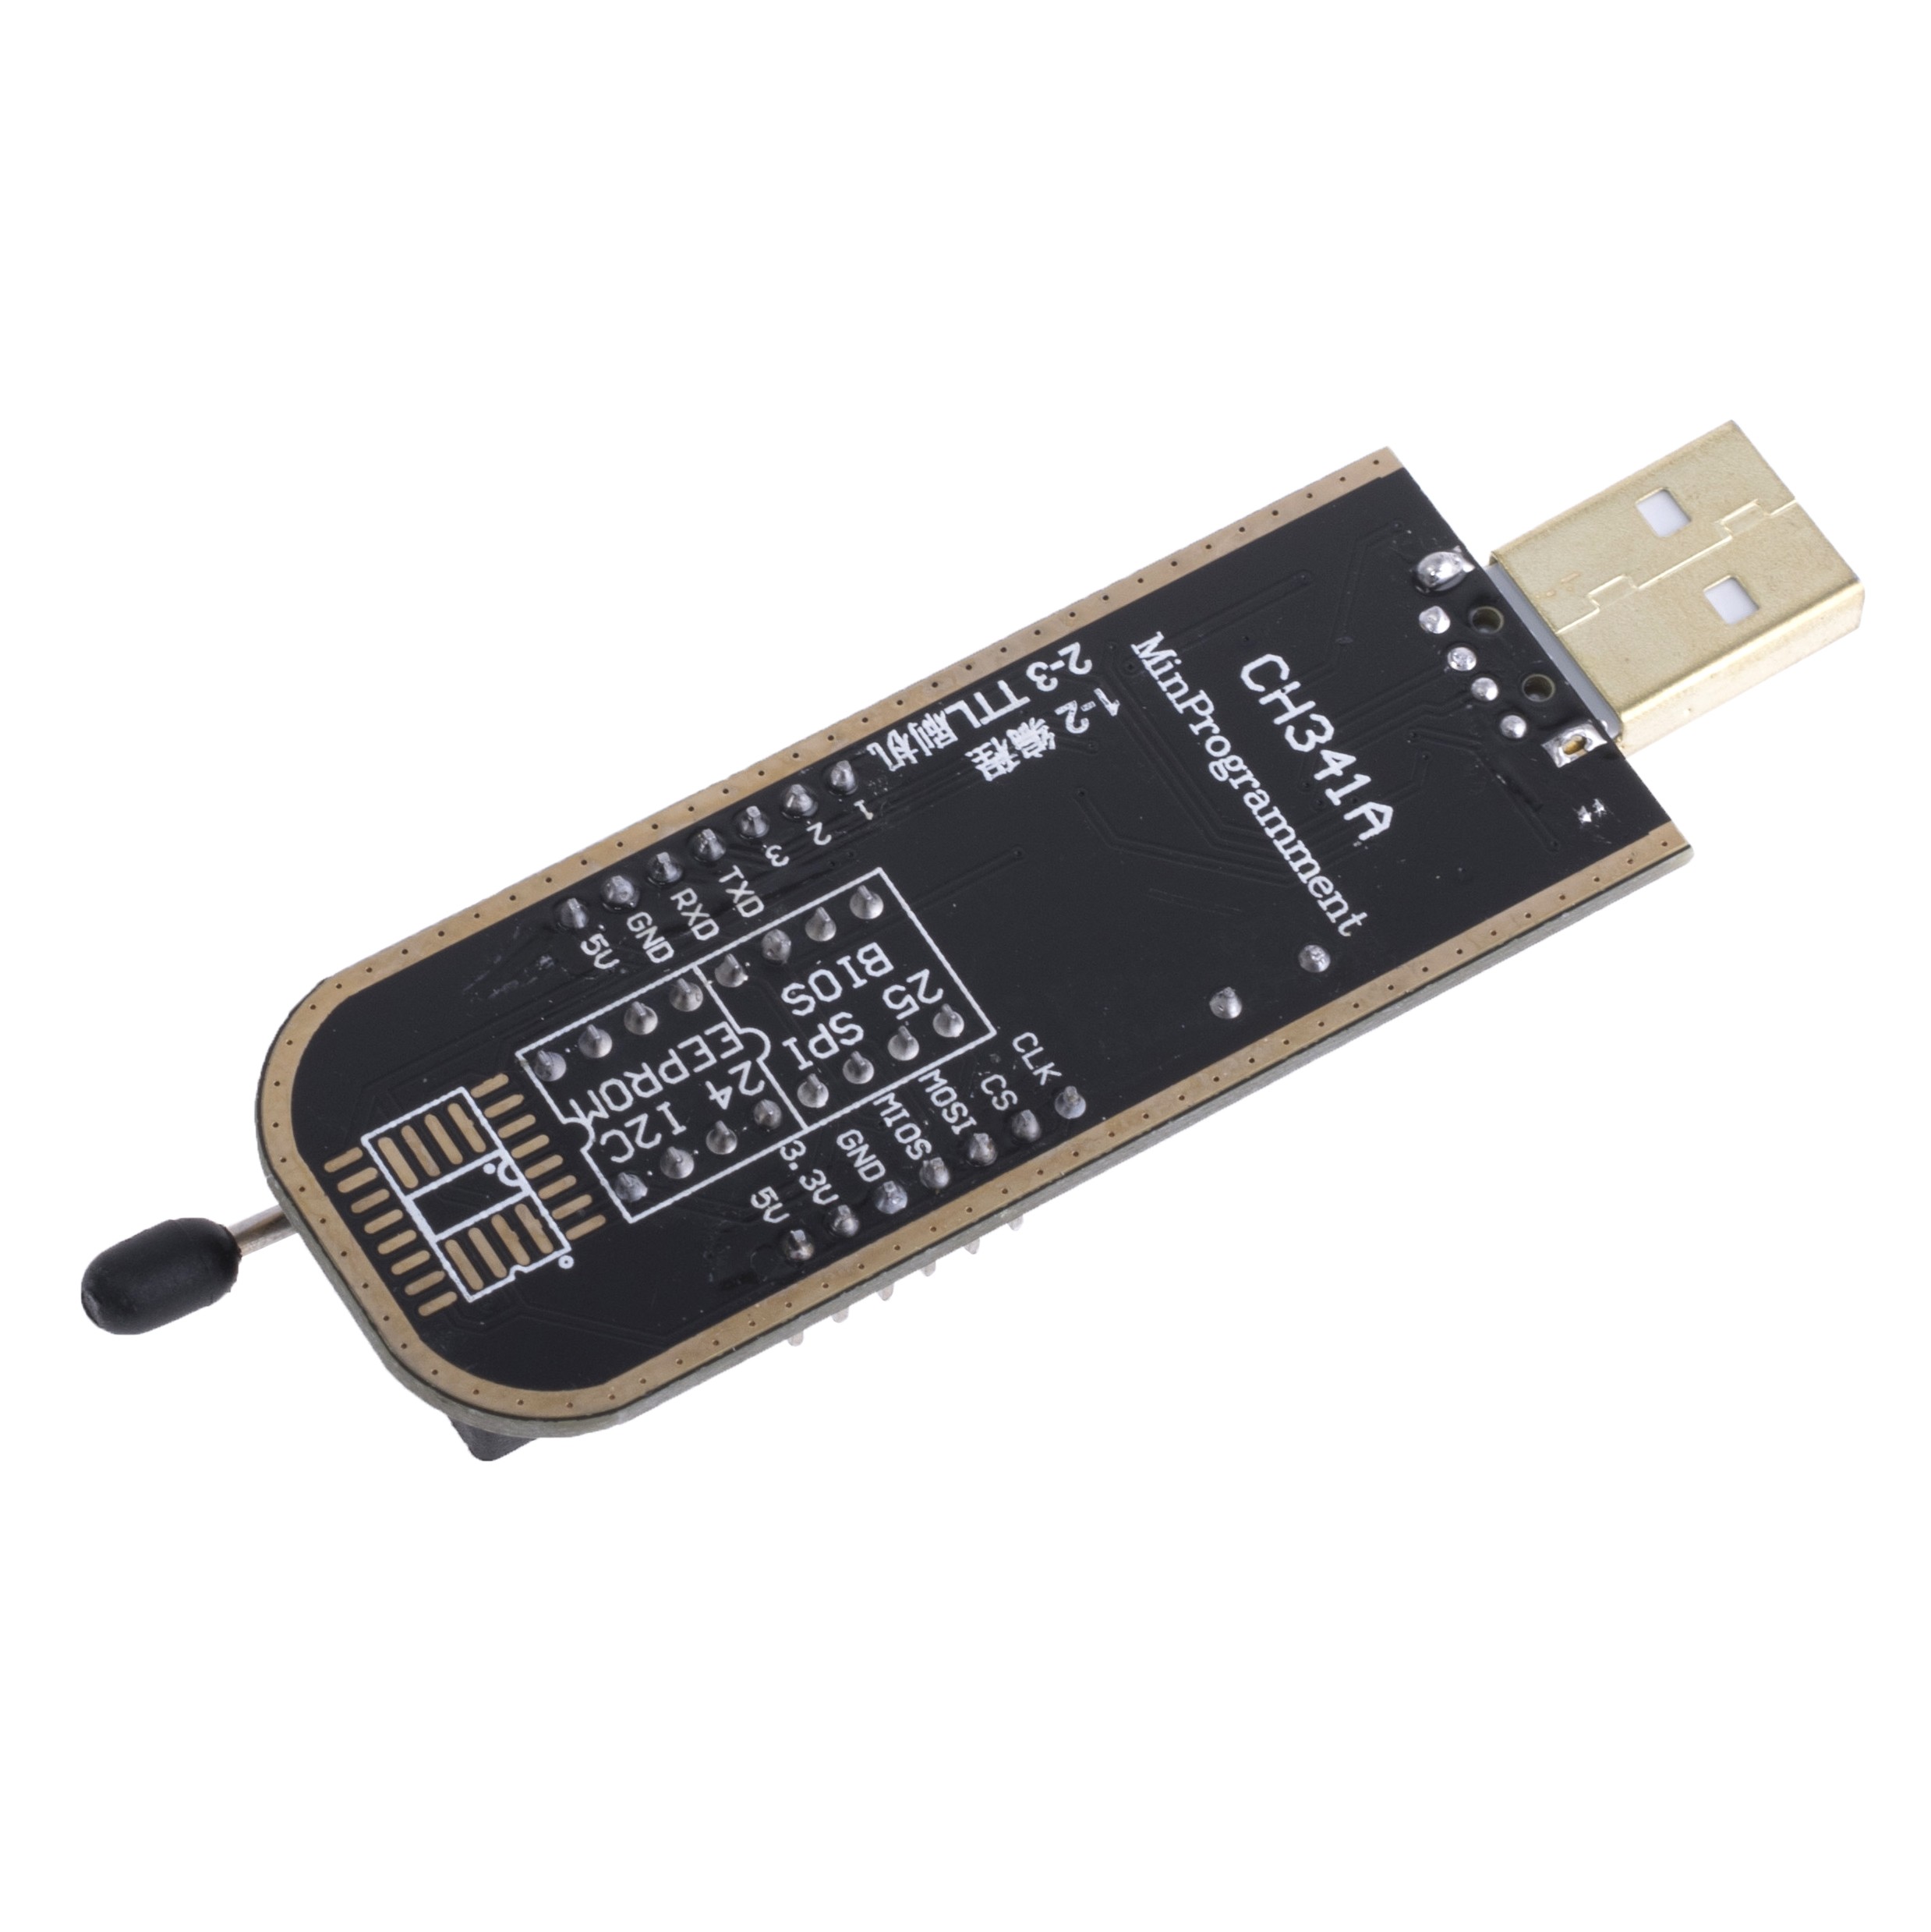 Многофункциональный USB-программатор CH341A + клипса для программирования SO-8 внутриплатно